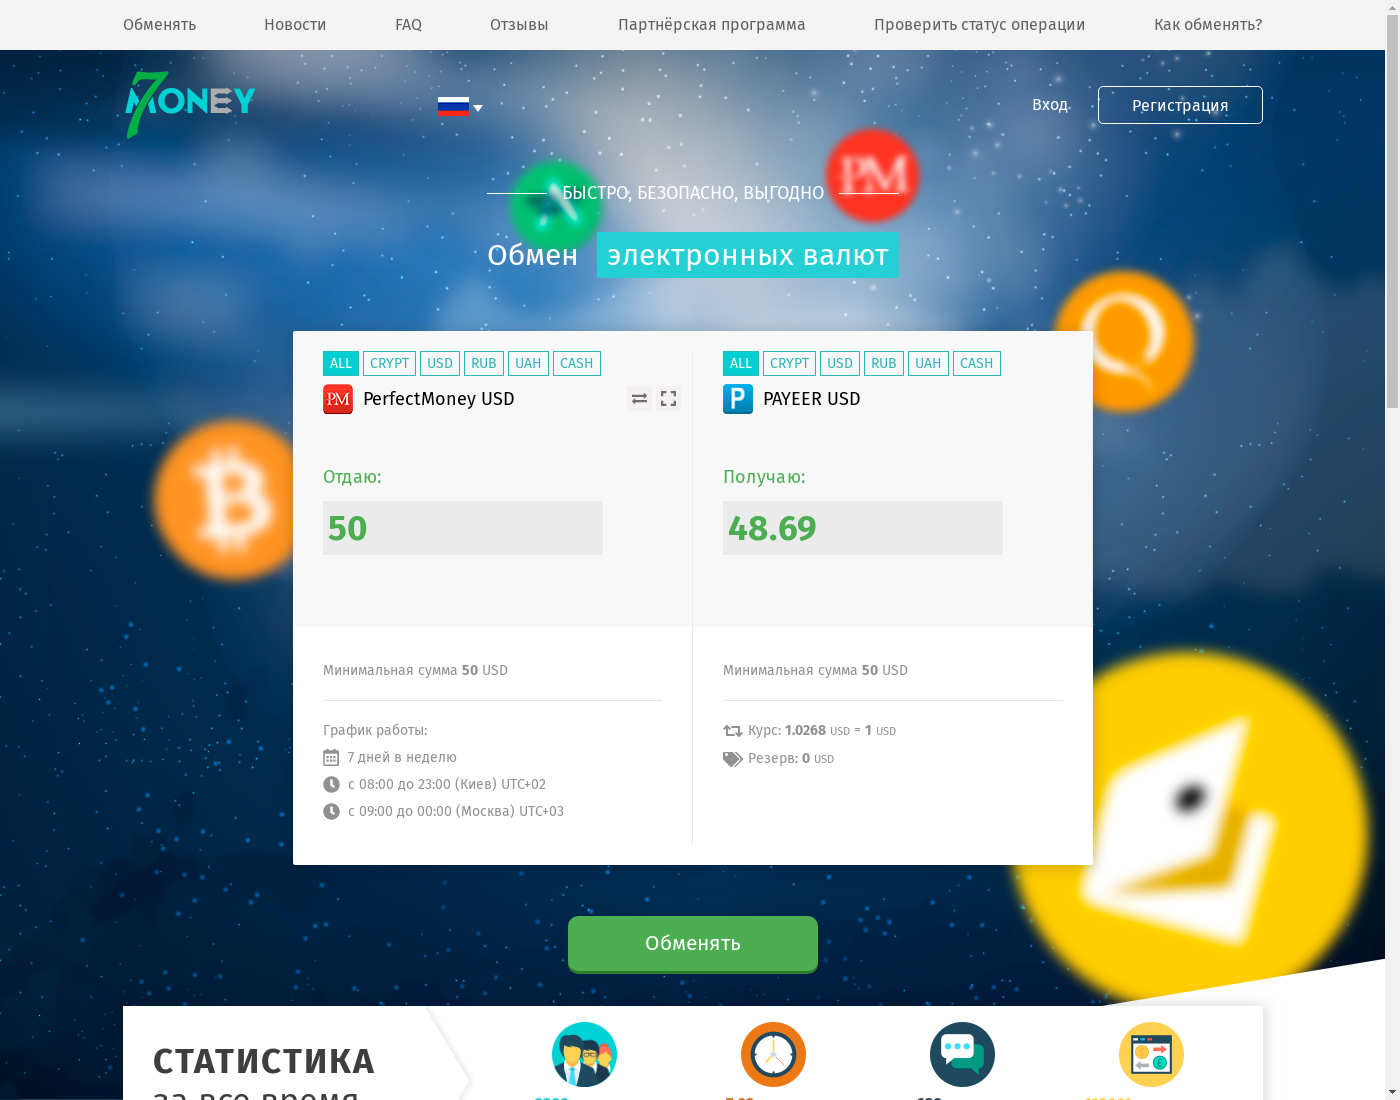 7money интерфейс пользователя: домашняя страничка на языке — Русский